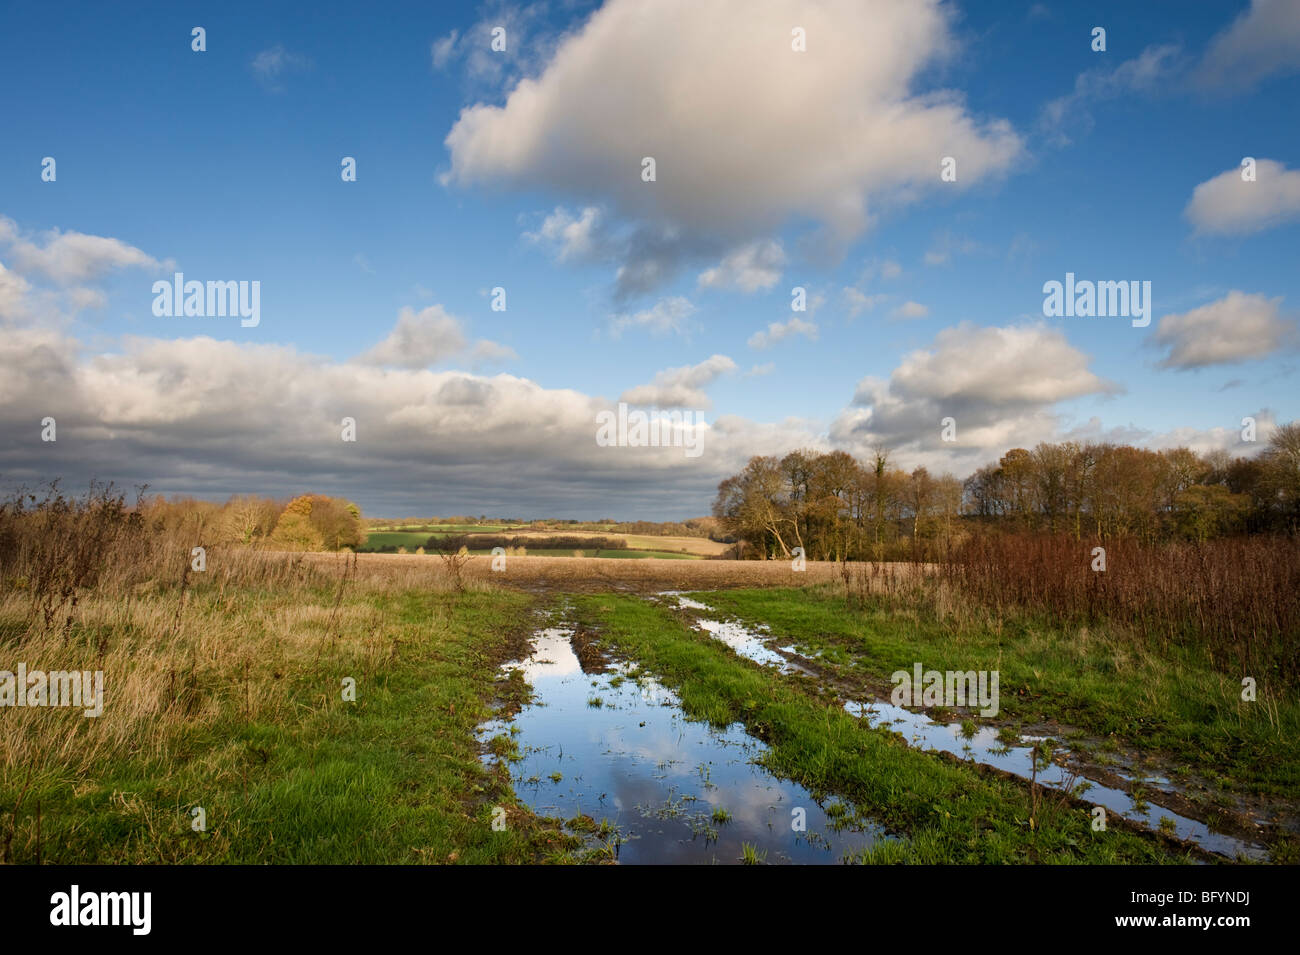 Ein Blick auf die Chilterns Landschaft Landschaft und Reflexionen des Himmels in Pfützen. Stockfoto